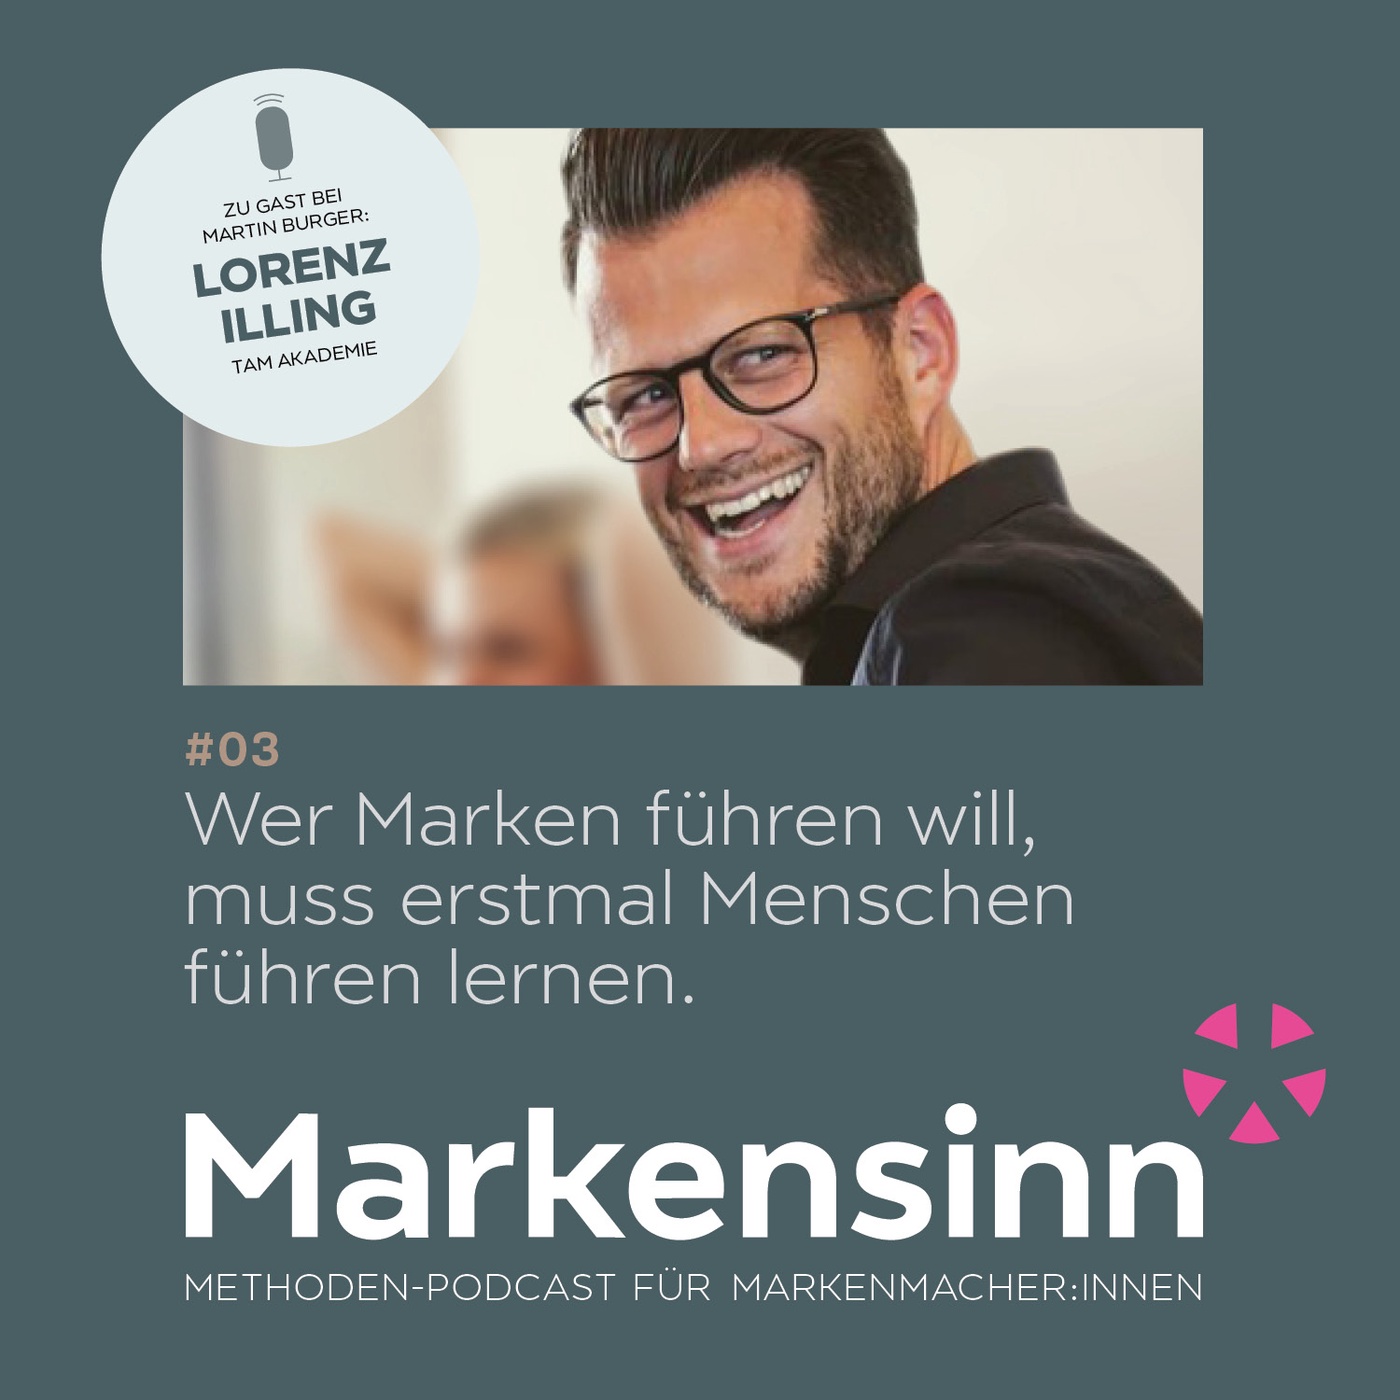 Episode 3: Markensinn-Talk mit Lorenz Illing von der TAM Akademie